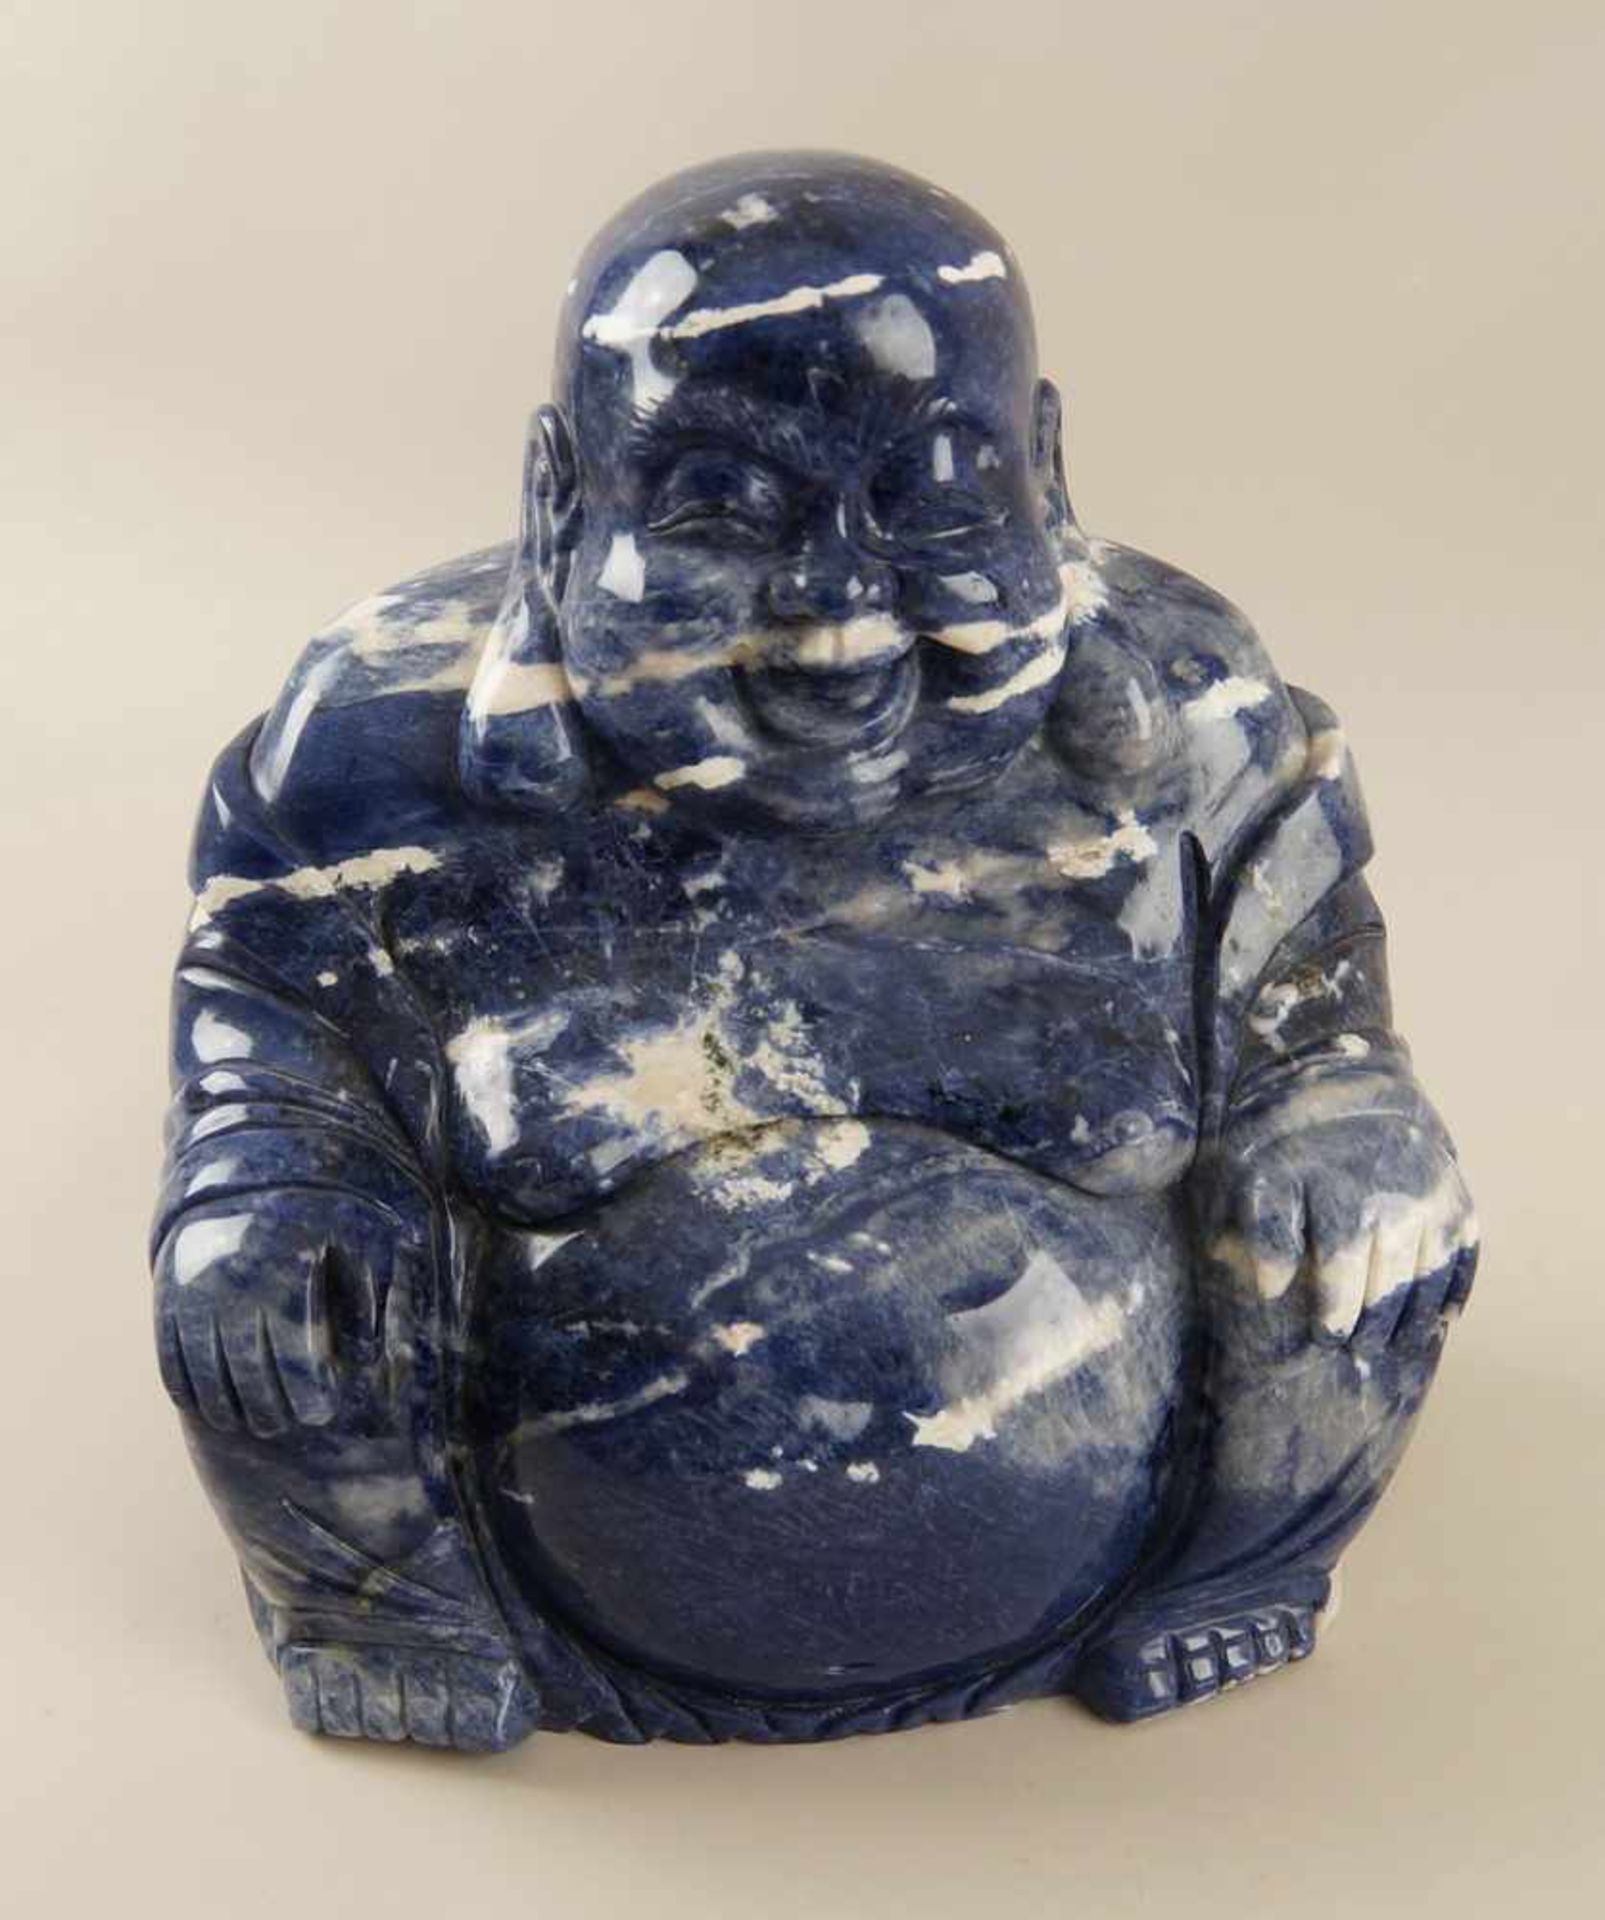 Sitzender Buddha aus Onyx, H 30 cm- - -24.00 % buyer's premium on the hammer price19.00 % VAT on - Bild 2 aus 7